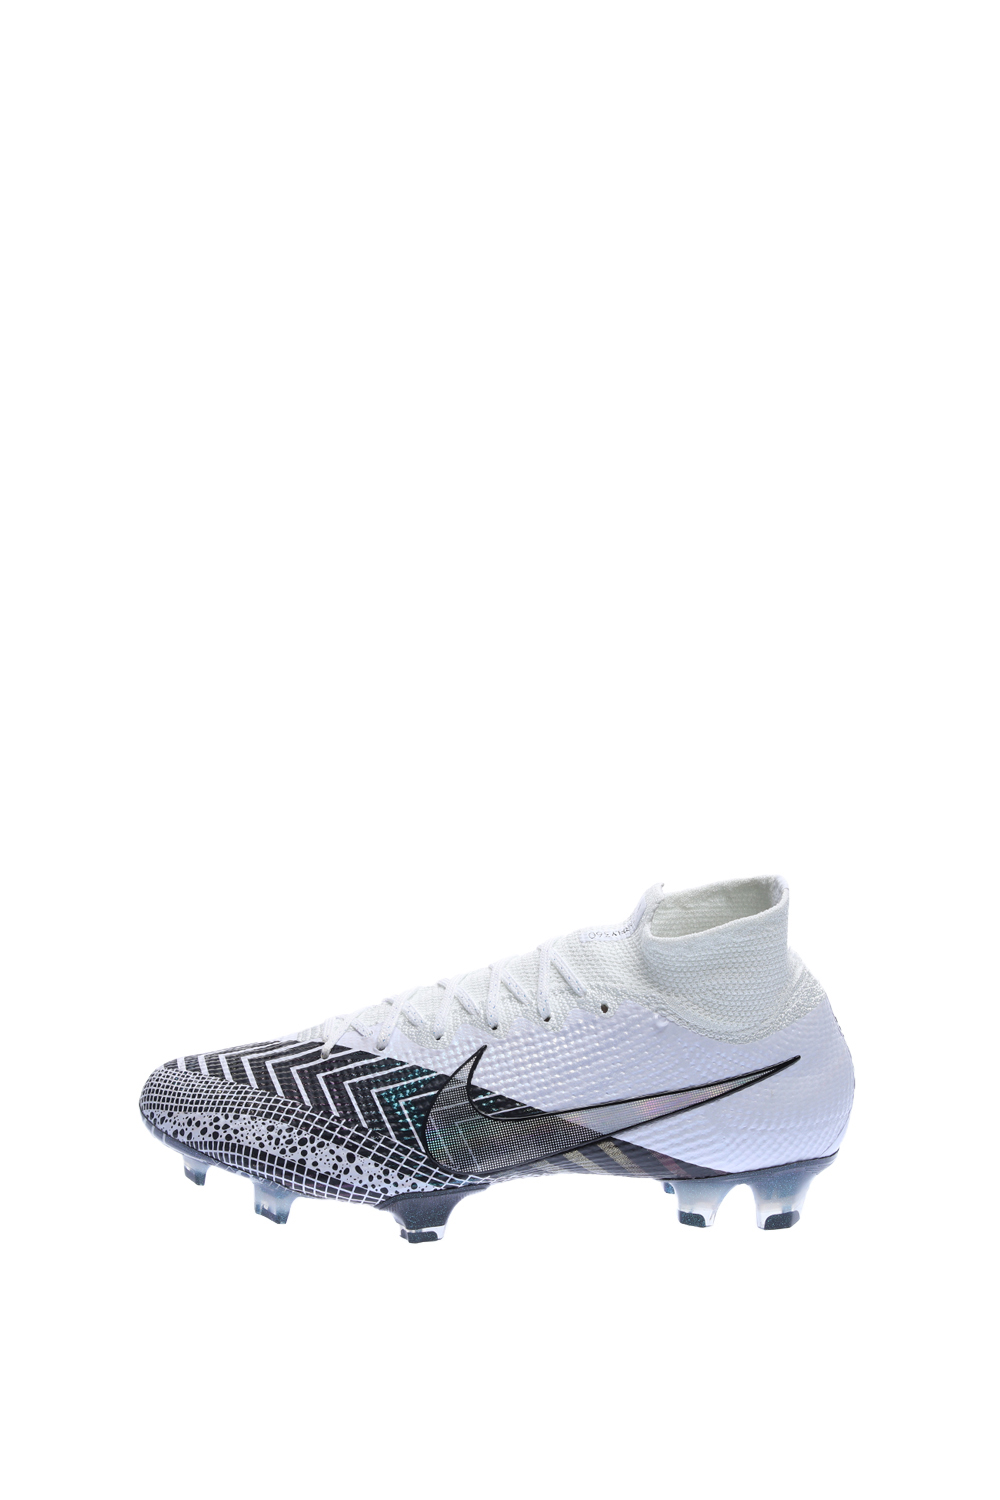 Ανδρικά/Παπούτσια/Αθλητικά/Football NIKE - Unisex παπούτσια football Nike Mercurial Superfly 7 Elite λευκά